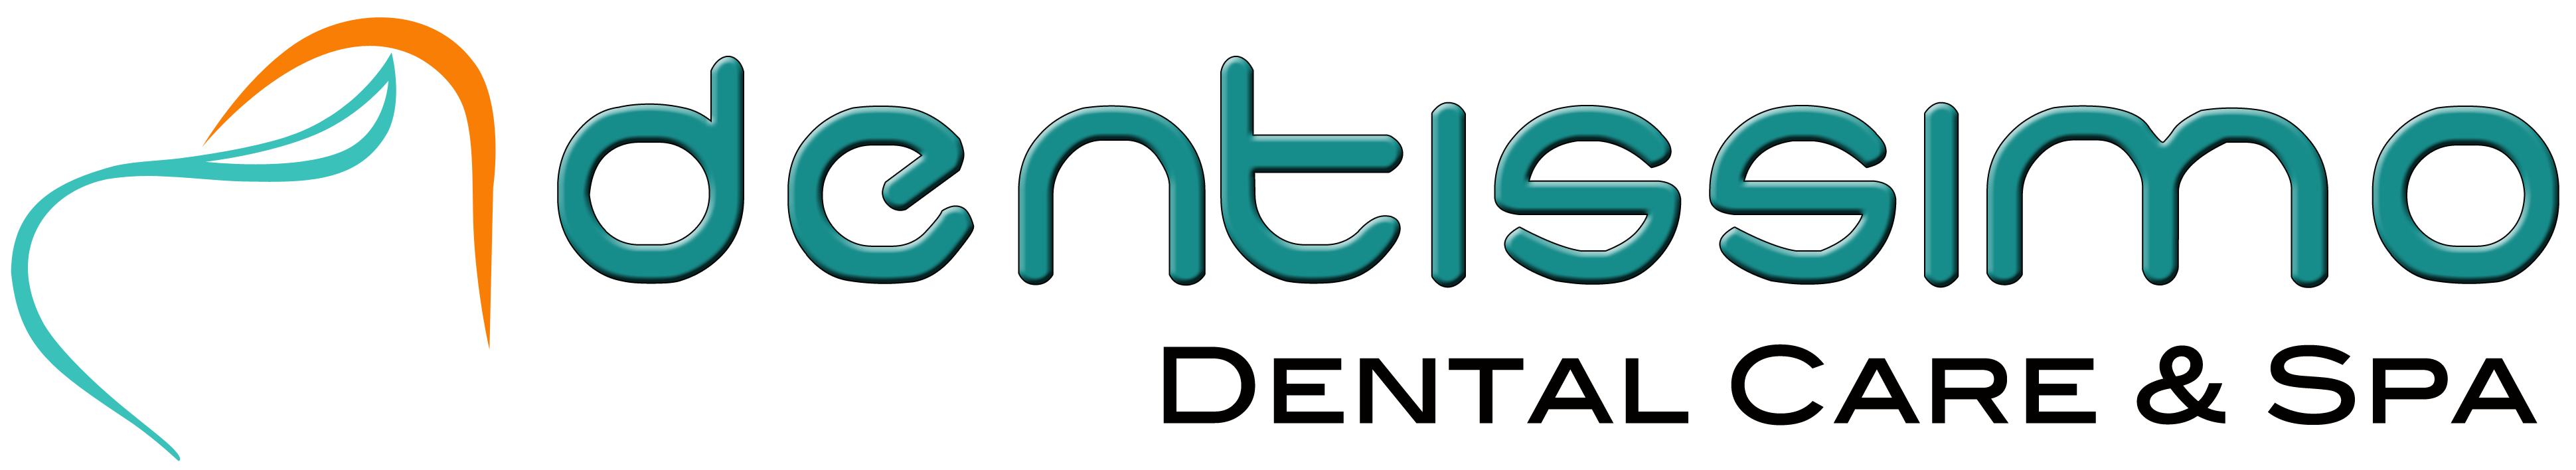 Dentissimo Dental Care & Spa|Clinics|Medical Services